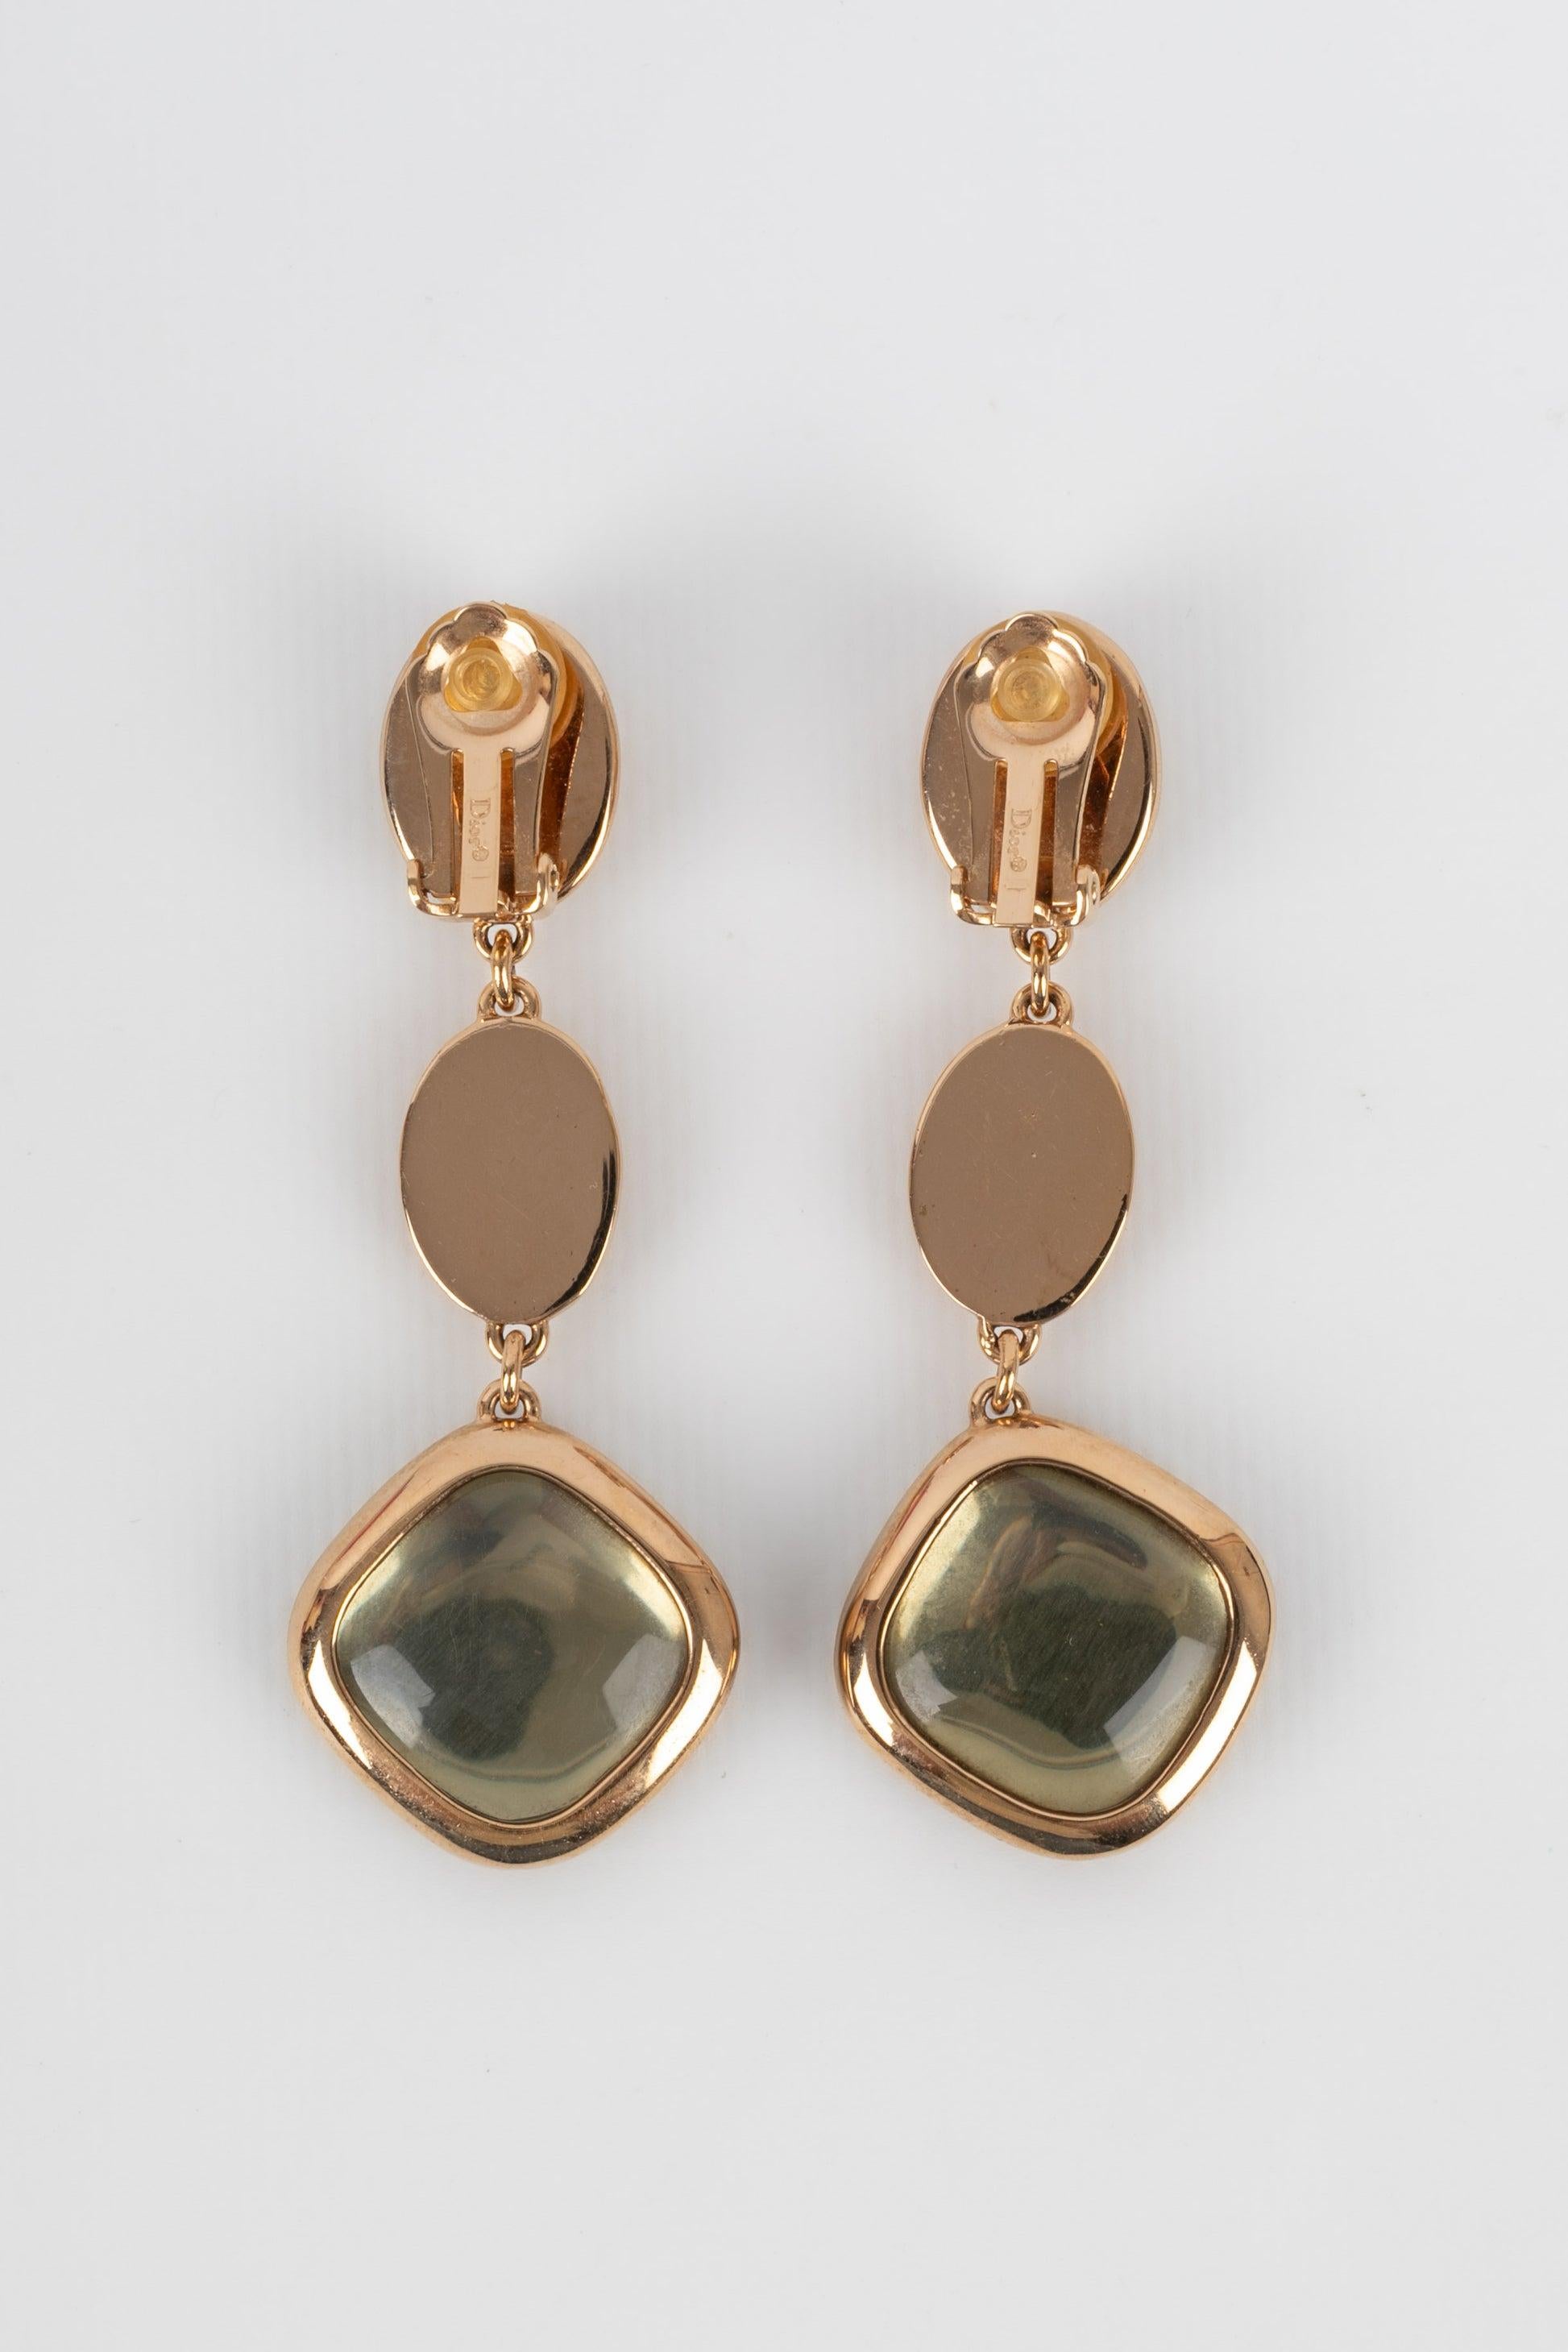 Dior - Goldene Ohrringe aus Metall mit Cabochons aus Harz und Glas.

Zusätzliche Informationen:
Zustand: Sehr guter Zustand
Abmessungen: Länge: 8 cm

Sellers Referenz: BO183